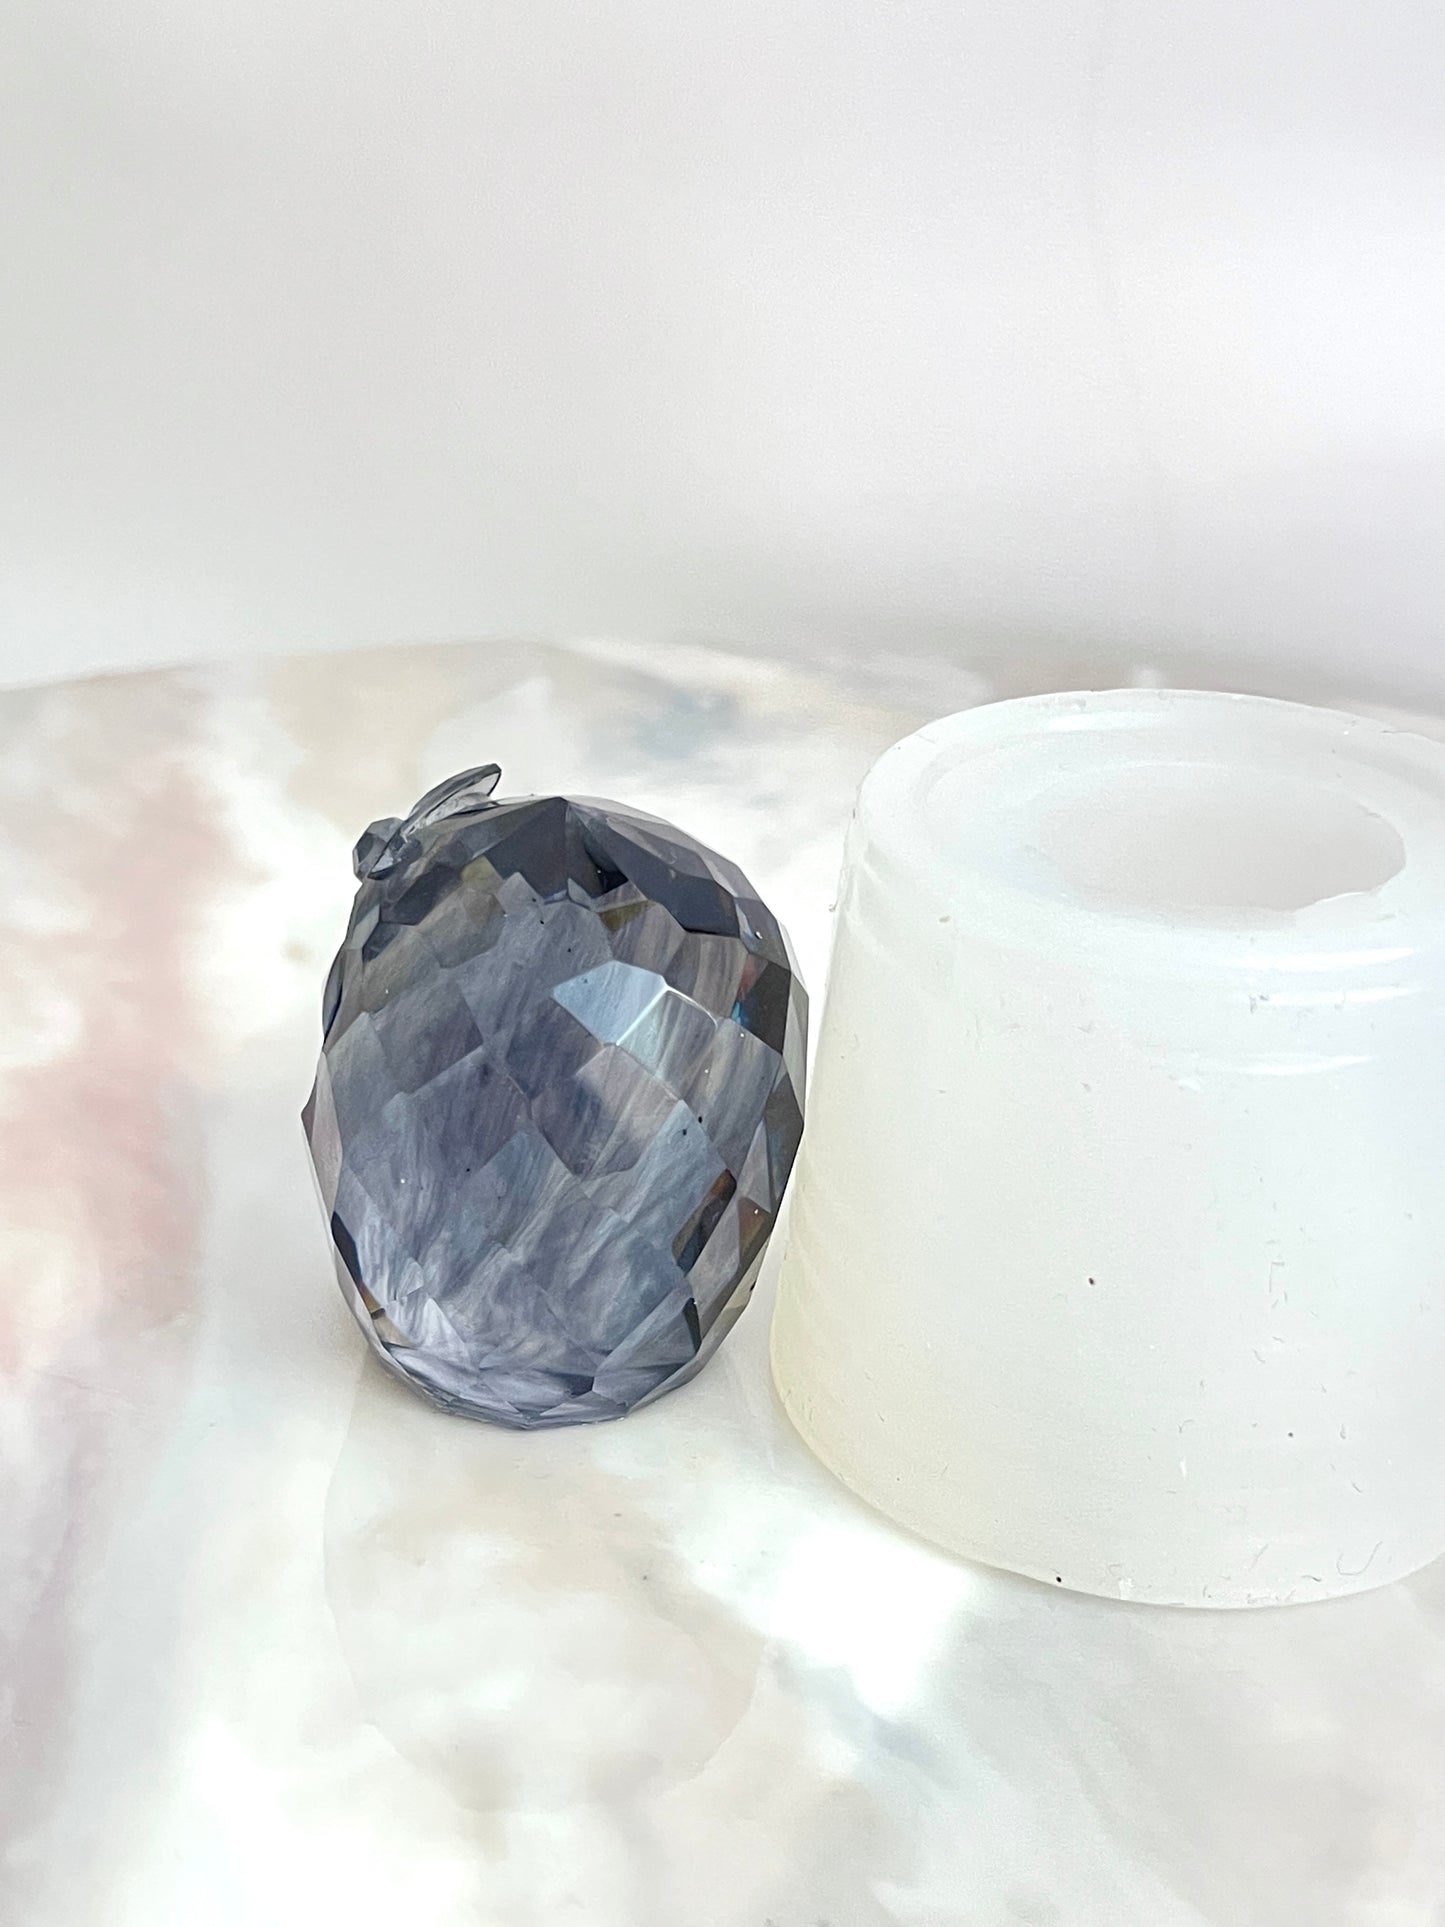 Erstellen Sie mit unserer Silikonform atemberaubende Kristall-Eulen-Designs